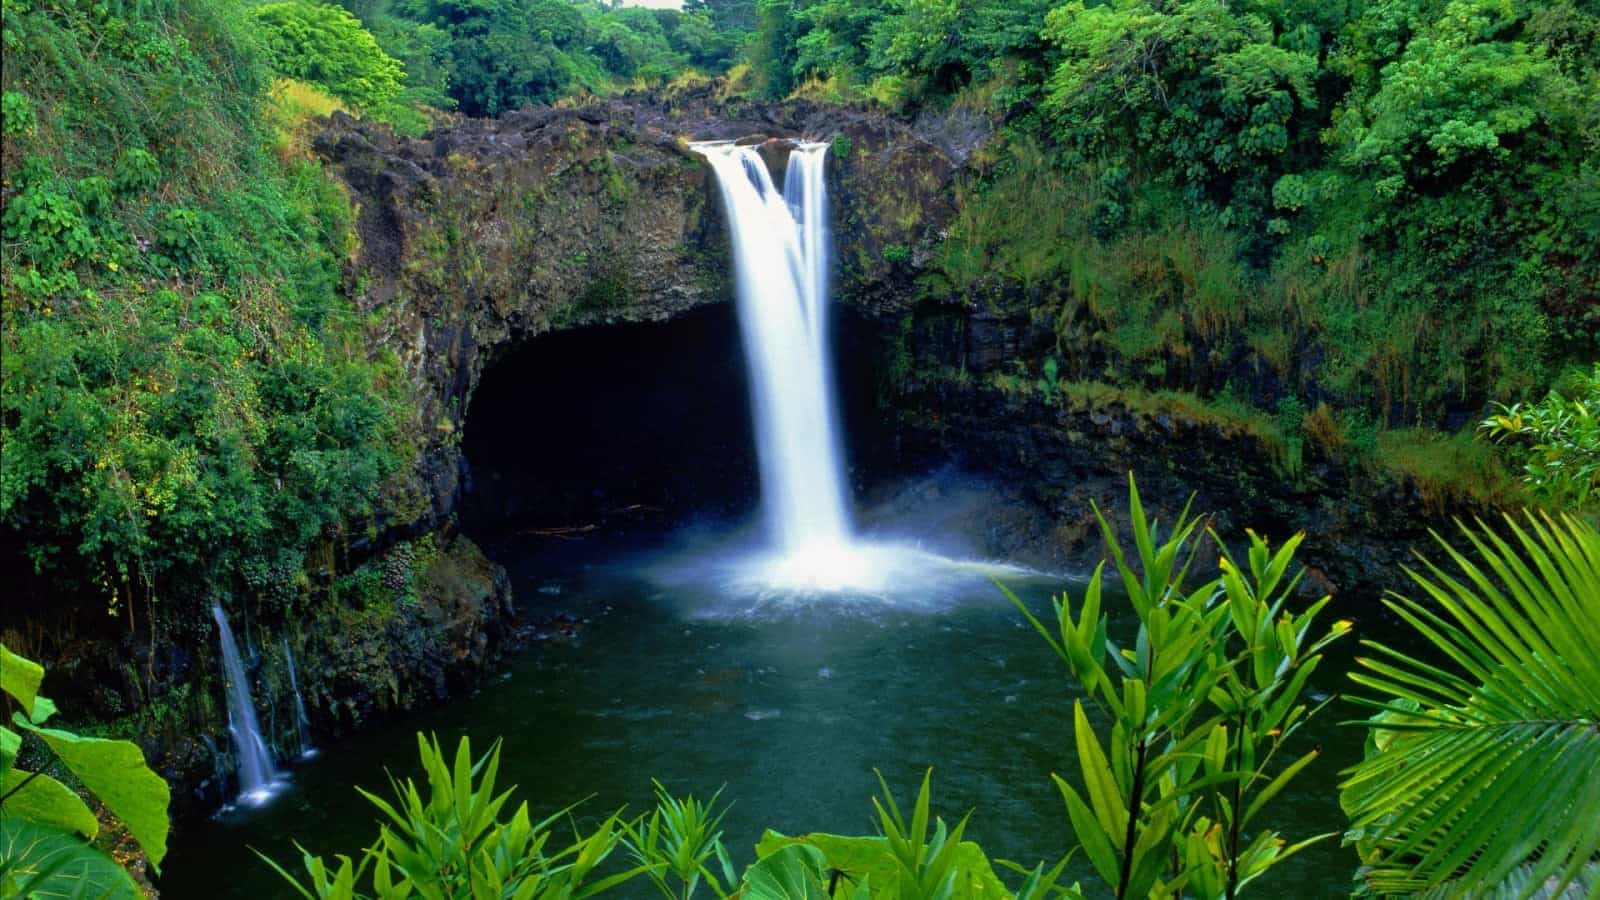 גן עדן הוואי - עכשיו גם עם קנאביס רפואי חוקי